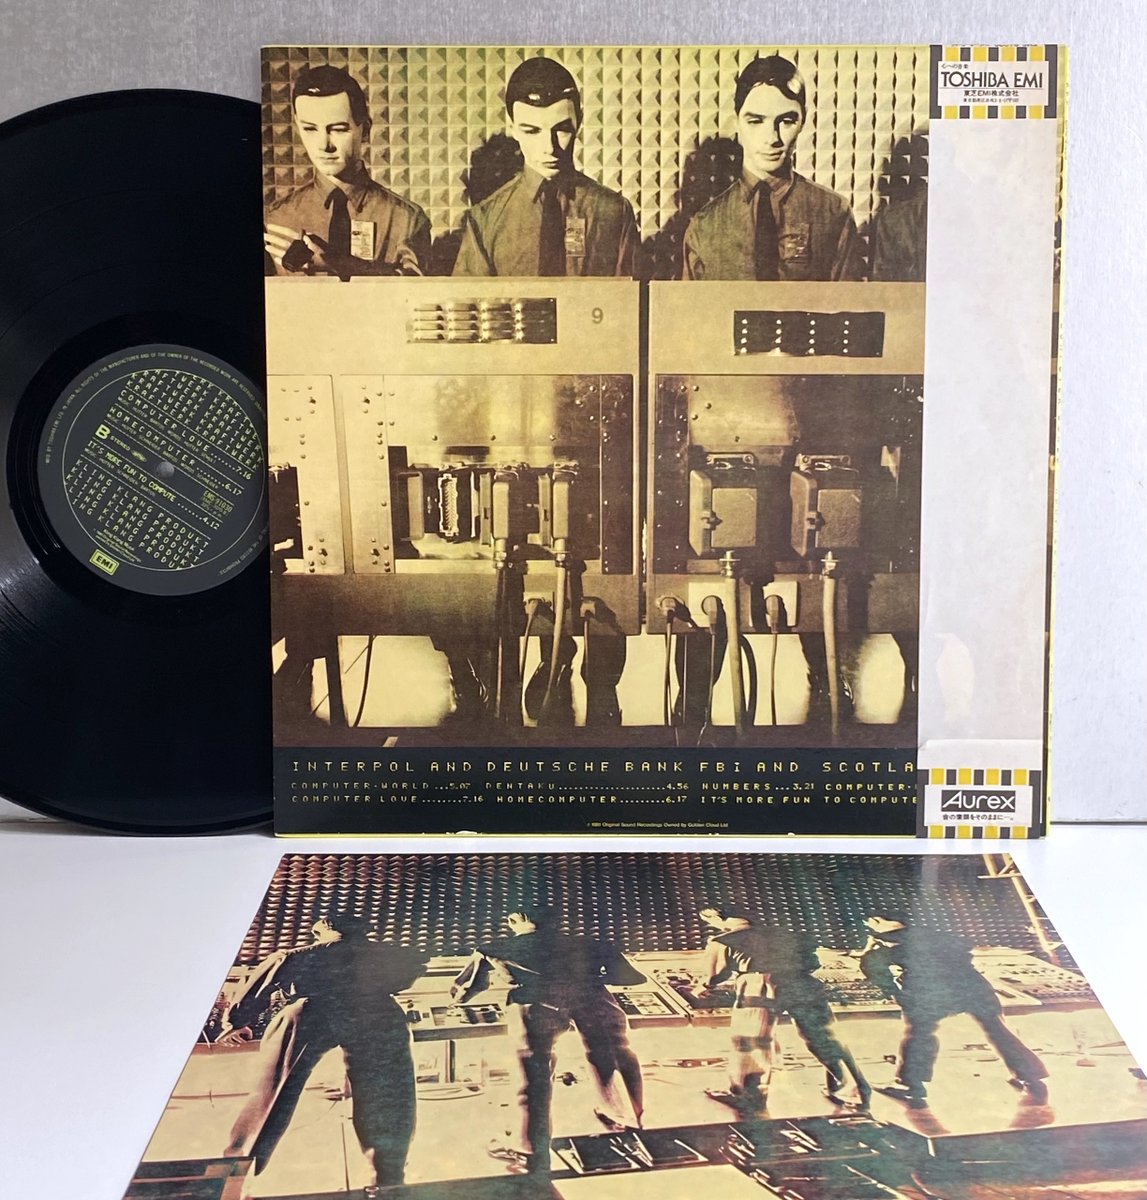 クラフトワーク『コンピューター・ワールド』ＬＰ
1981 Japan EMI
#クラフトワーク #Kraftwerk #RalfHütter #FlorianSchneider #KarlBartos #FlorianSchneider #KlingKlang #electro #synthpop #technopop #krautrock #80smusic #vinylrecords #レコード💿🤖💛🎶